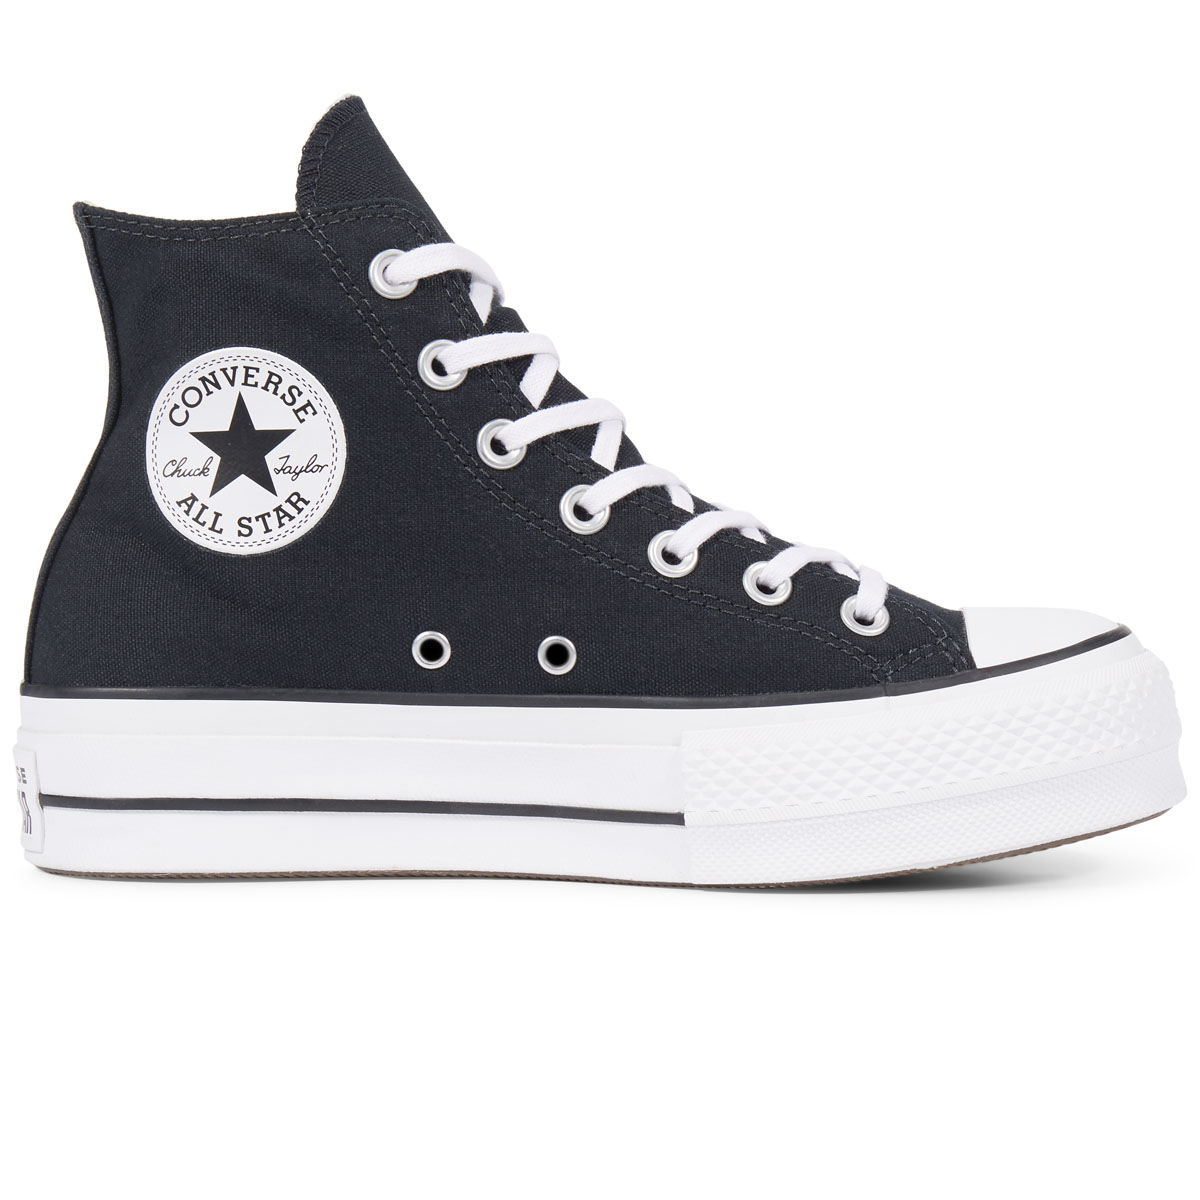 Tênis Converse All Star Preto/preto/preto - Frank Chaves Calçados